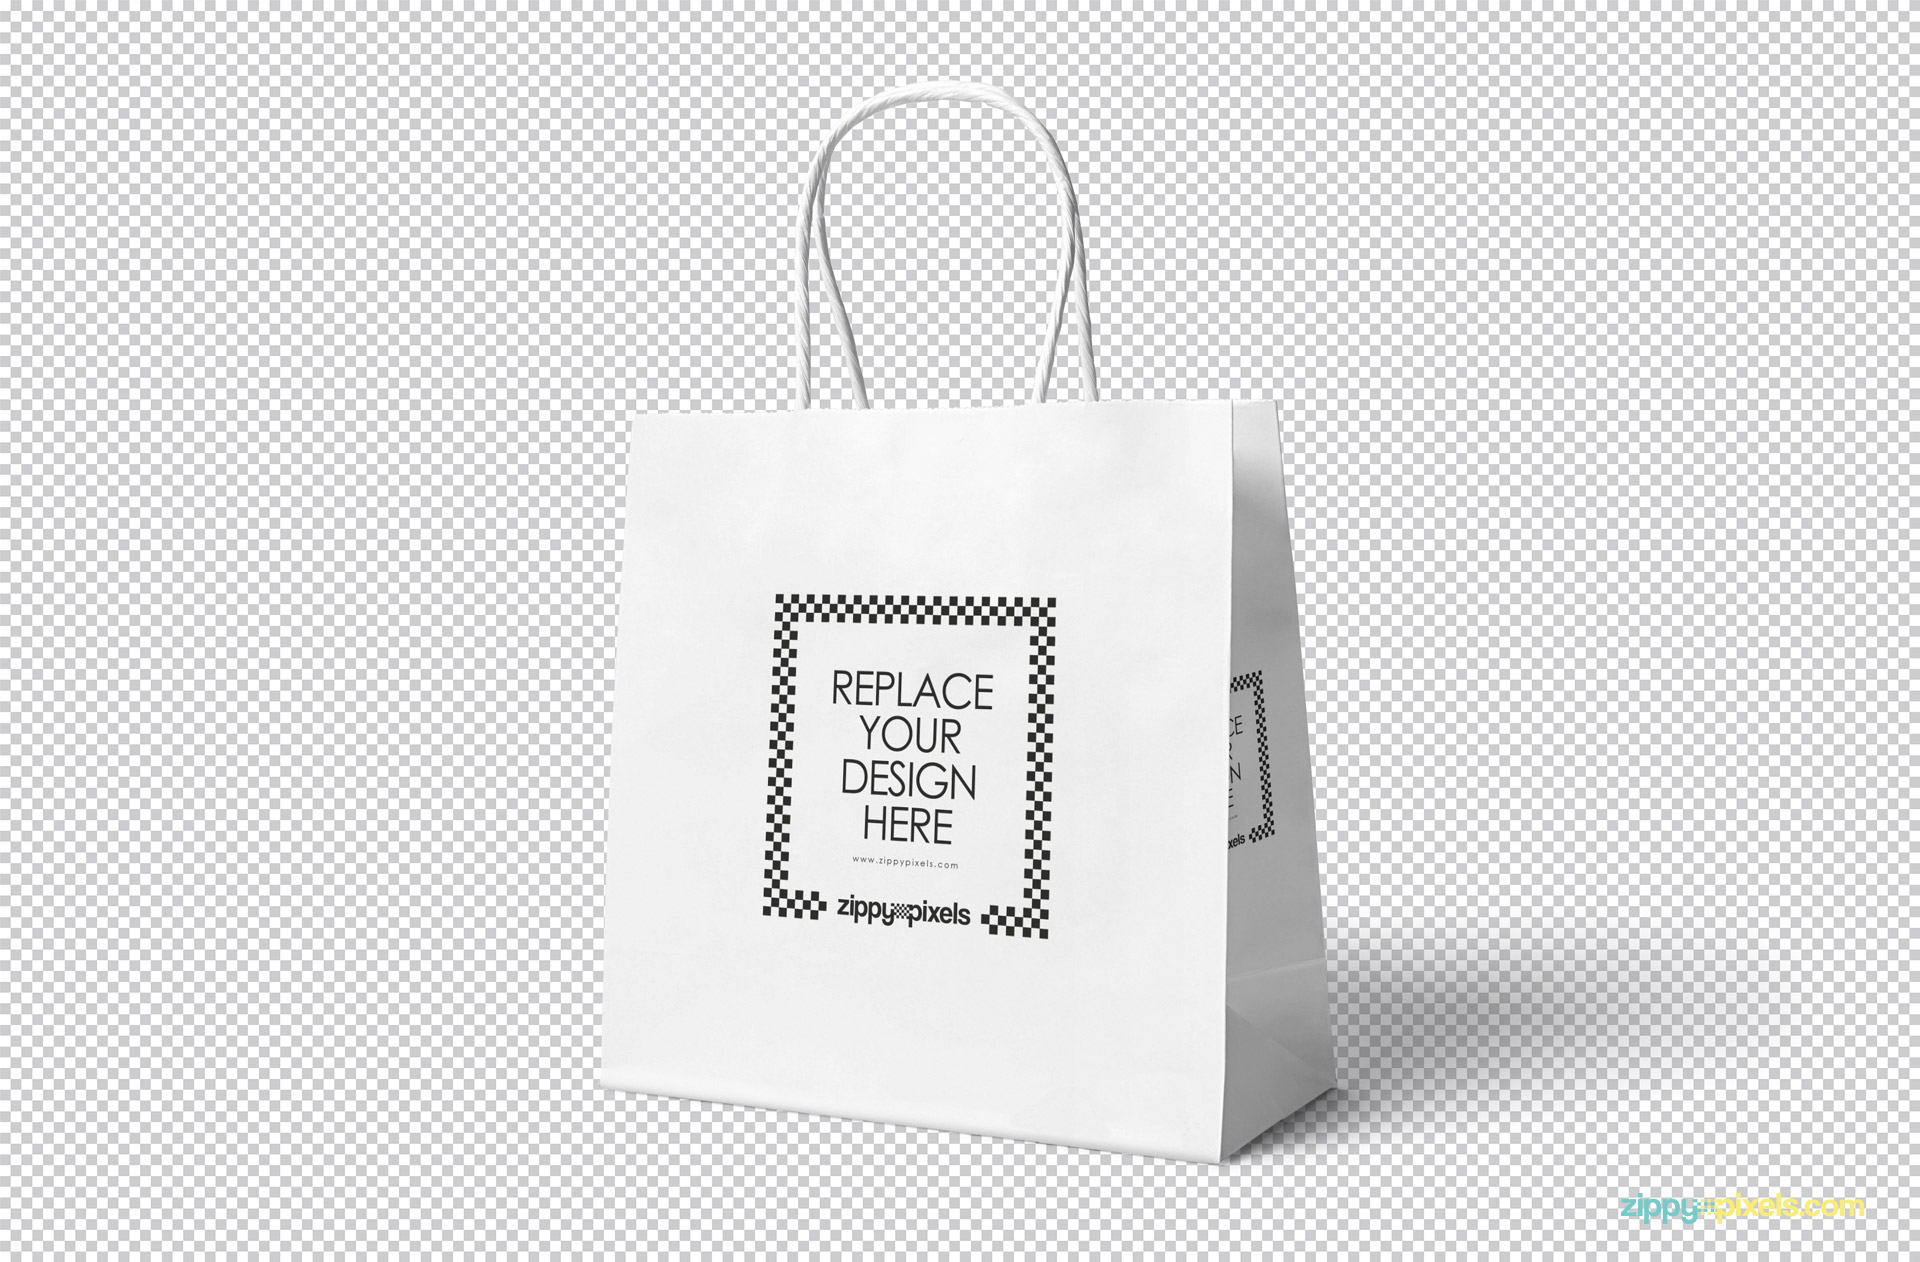 Download Gift Bag Psd Mockup Download For Free Designhooks